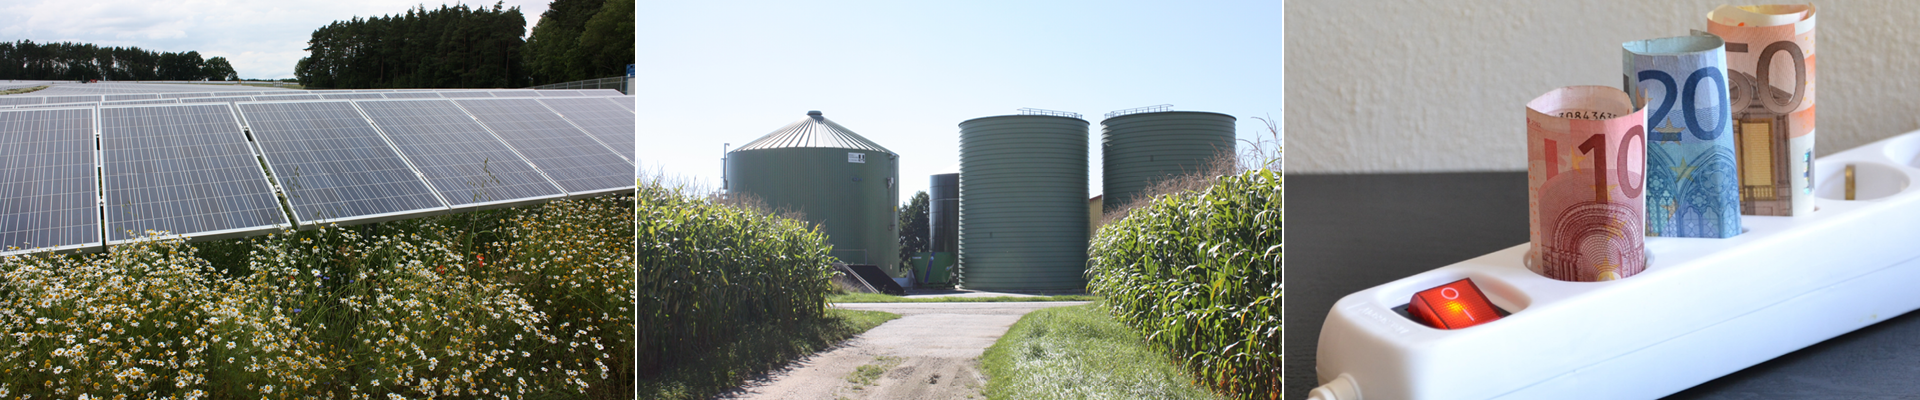 7. Bayerische Biogastagung “Stroh, Gras => Biogas” in Straubing oder Digital